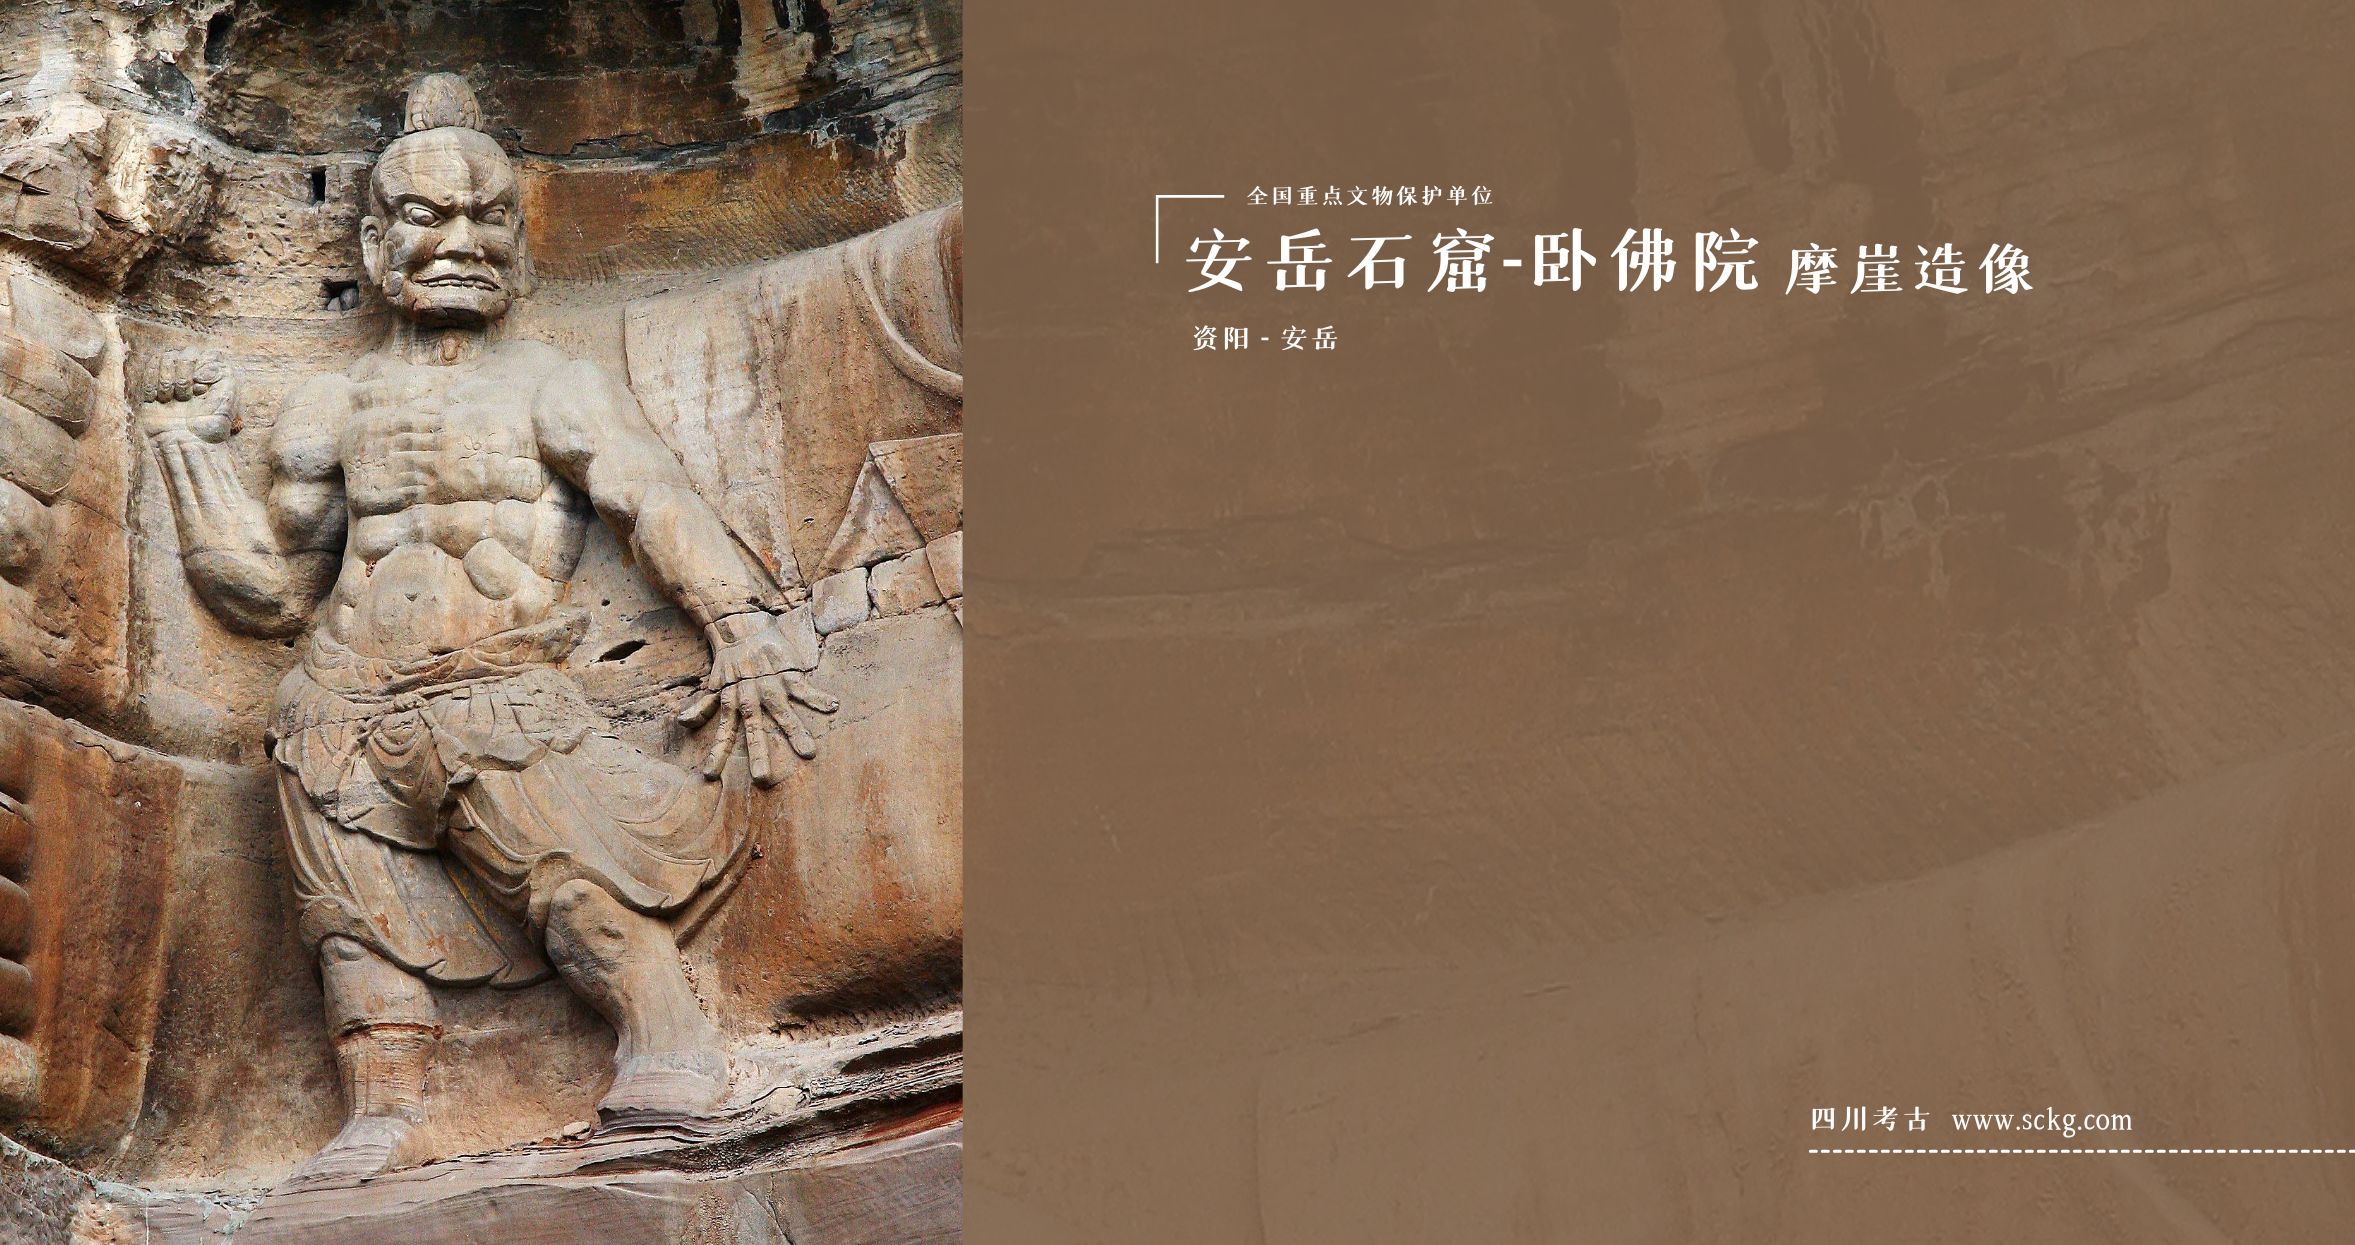 安岳石窟-卧佛院摩崖造像-第3龛力士